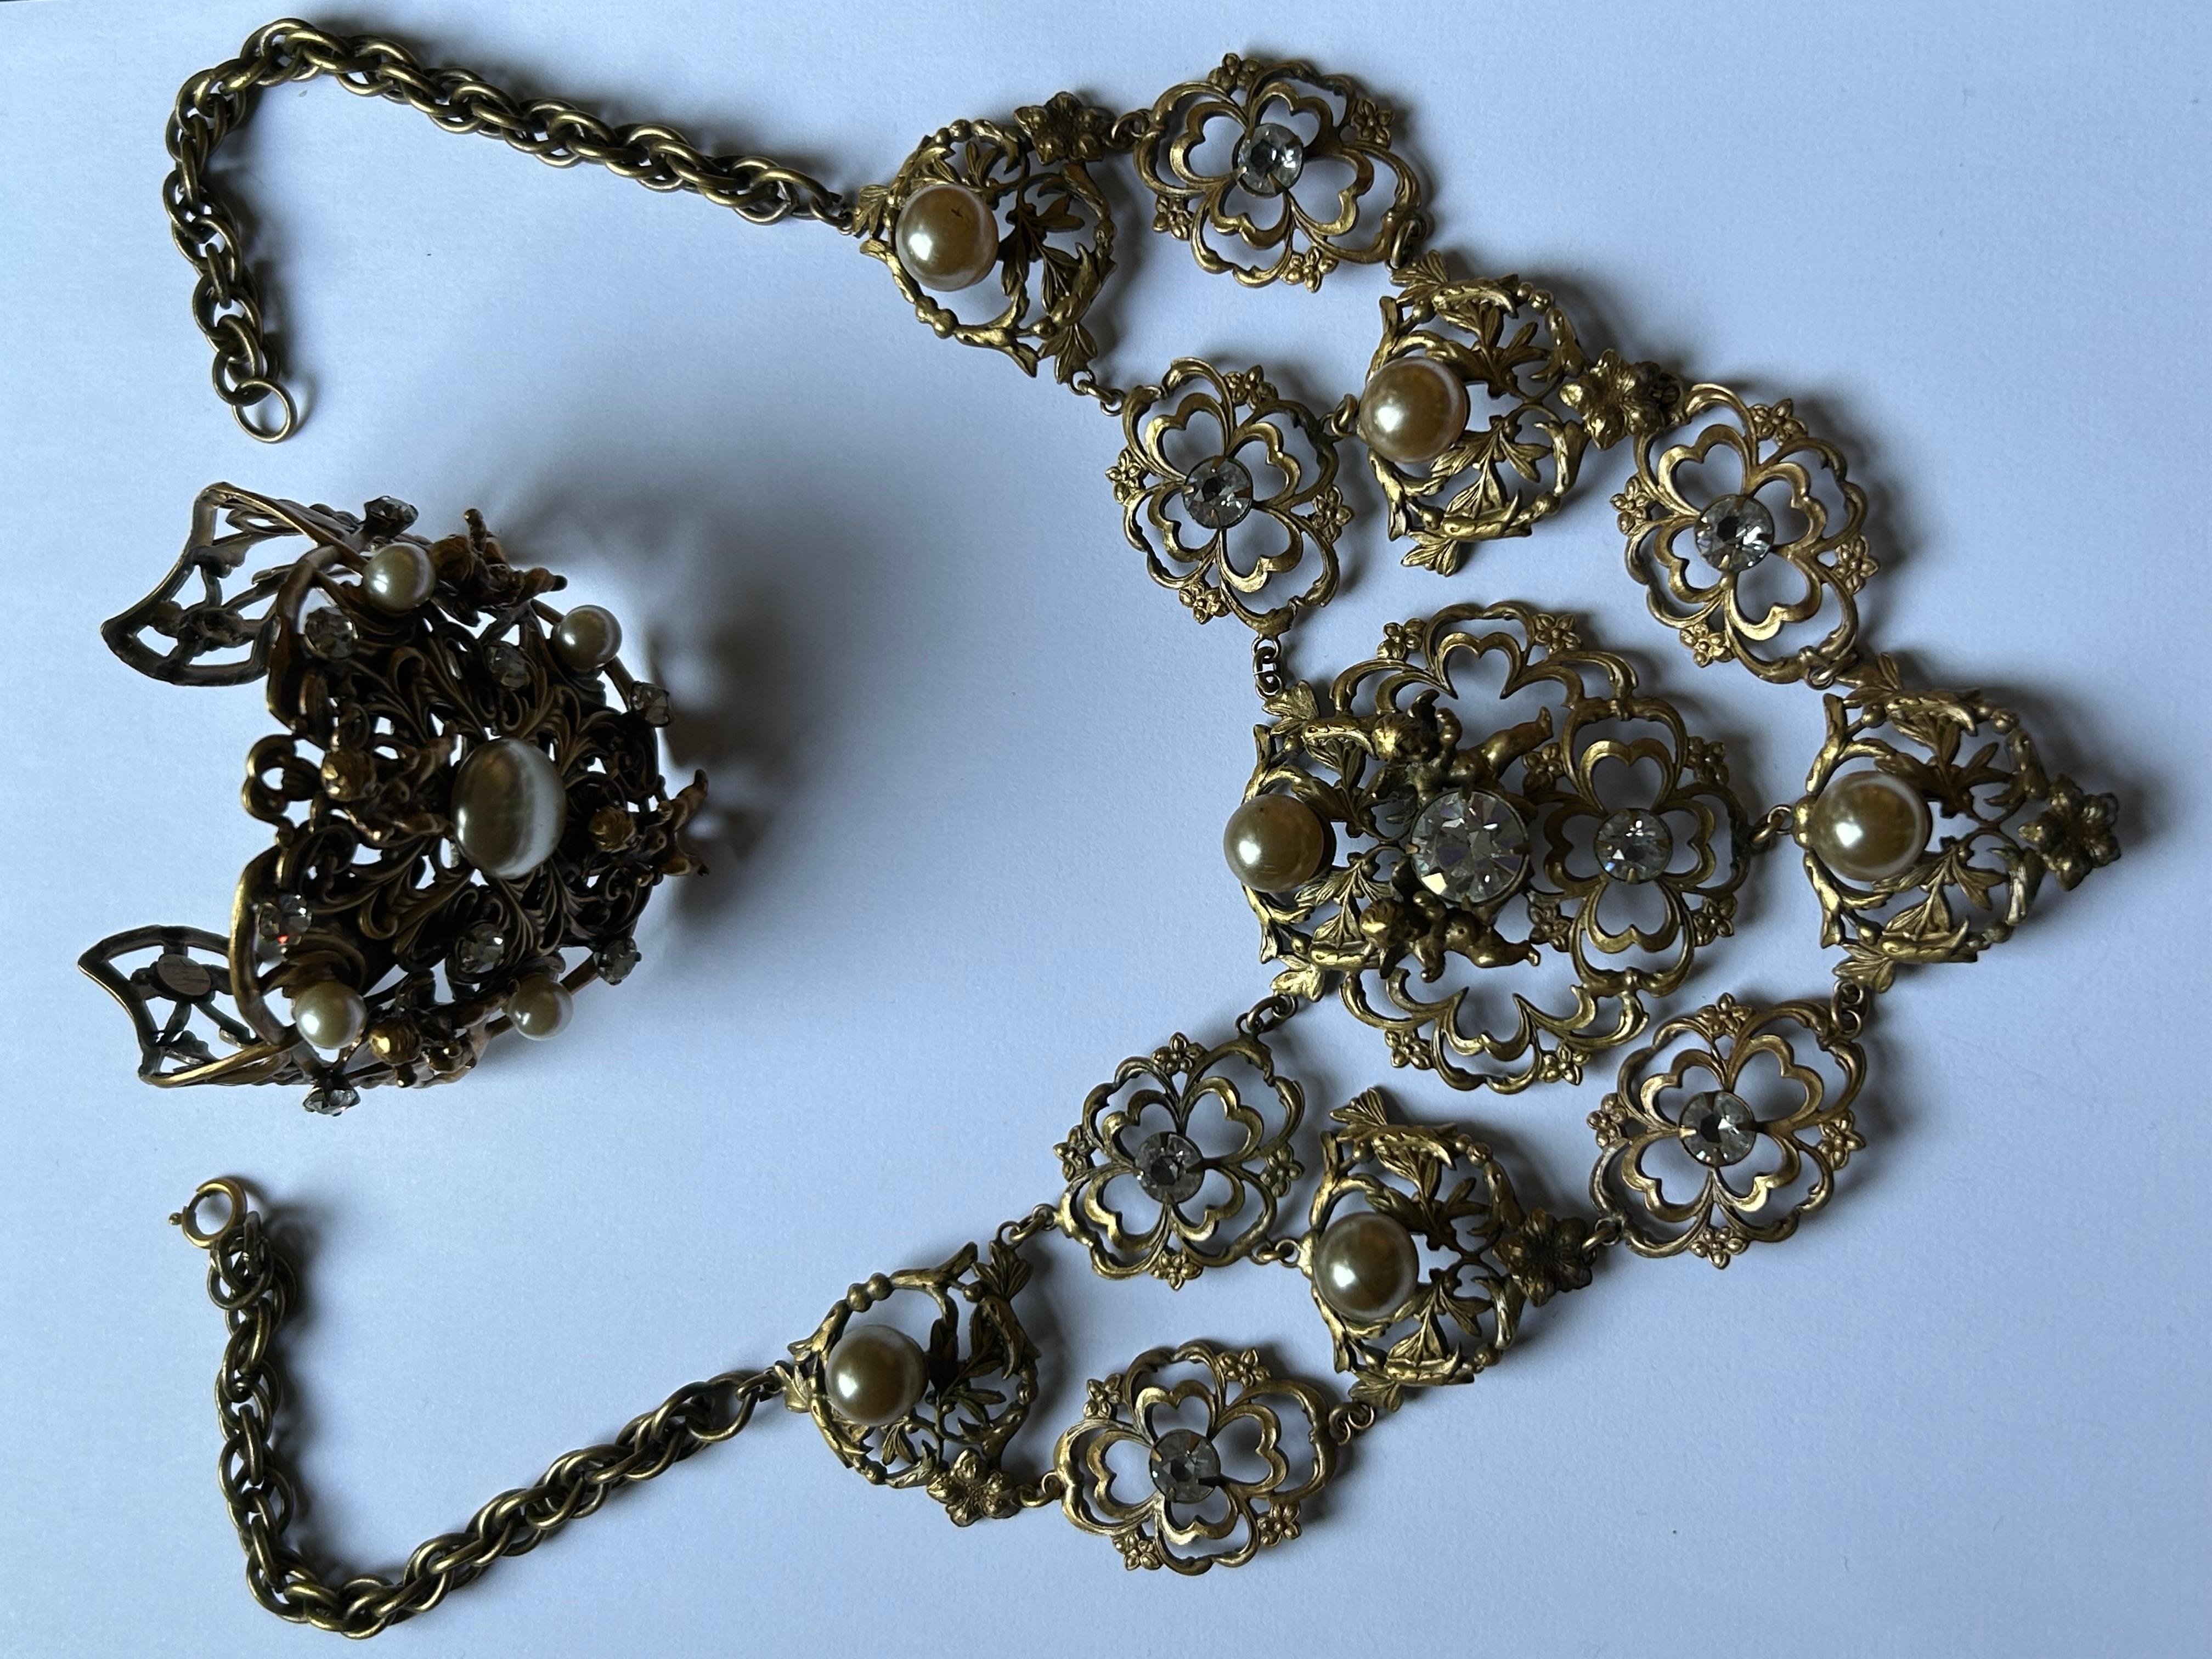 Vintage Joseff of Hollywood Stunning Halskette und Armband seltene Set.

Beide Stücke In gealterten Goldmetall Finish . Einige
Leichte Anlaufen hier und da auf der Halskette. Einige kleine Flecken auf der faux Perlen auf Halskette.

Dies ist ein